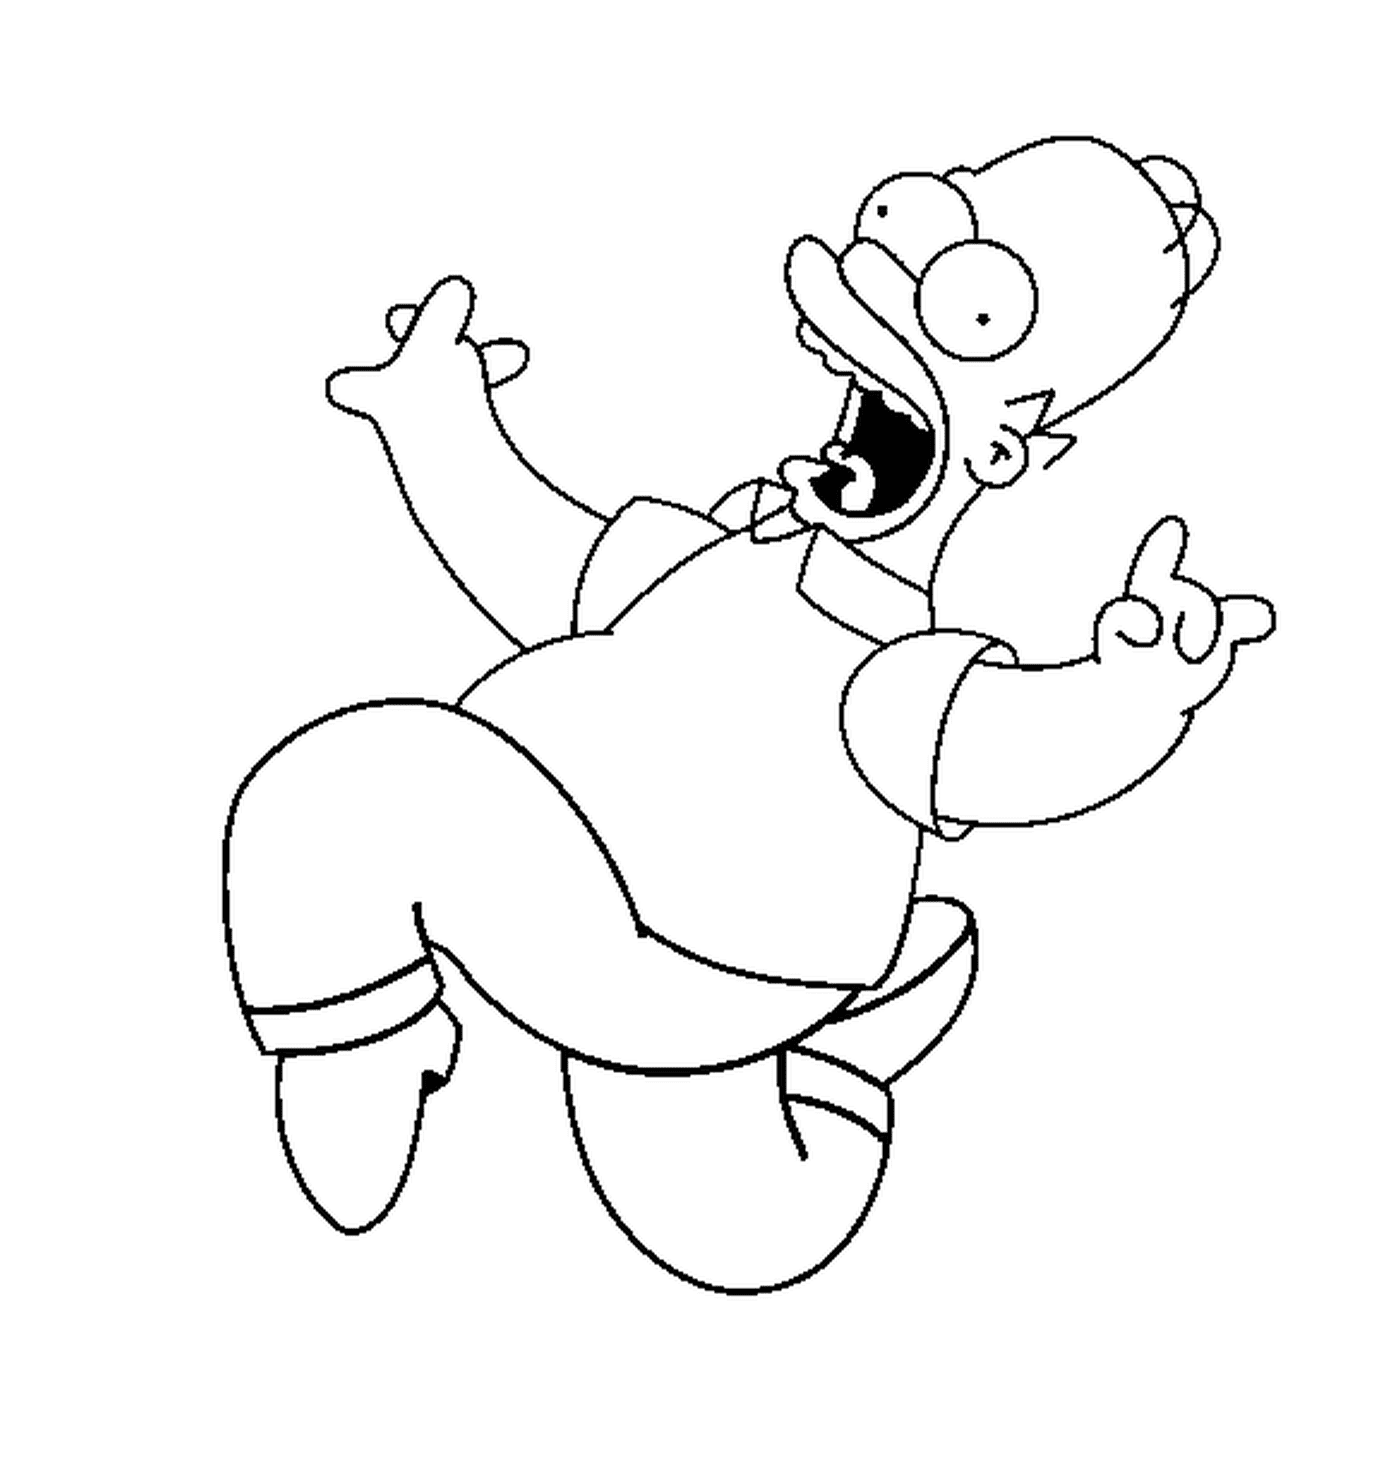  Homero Simpson salta con alegría 